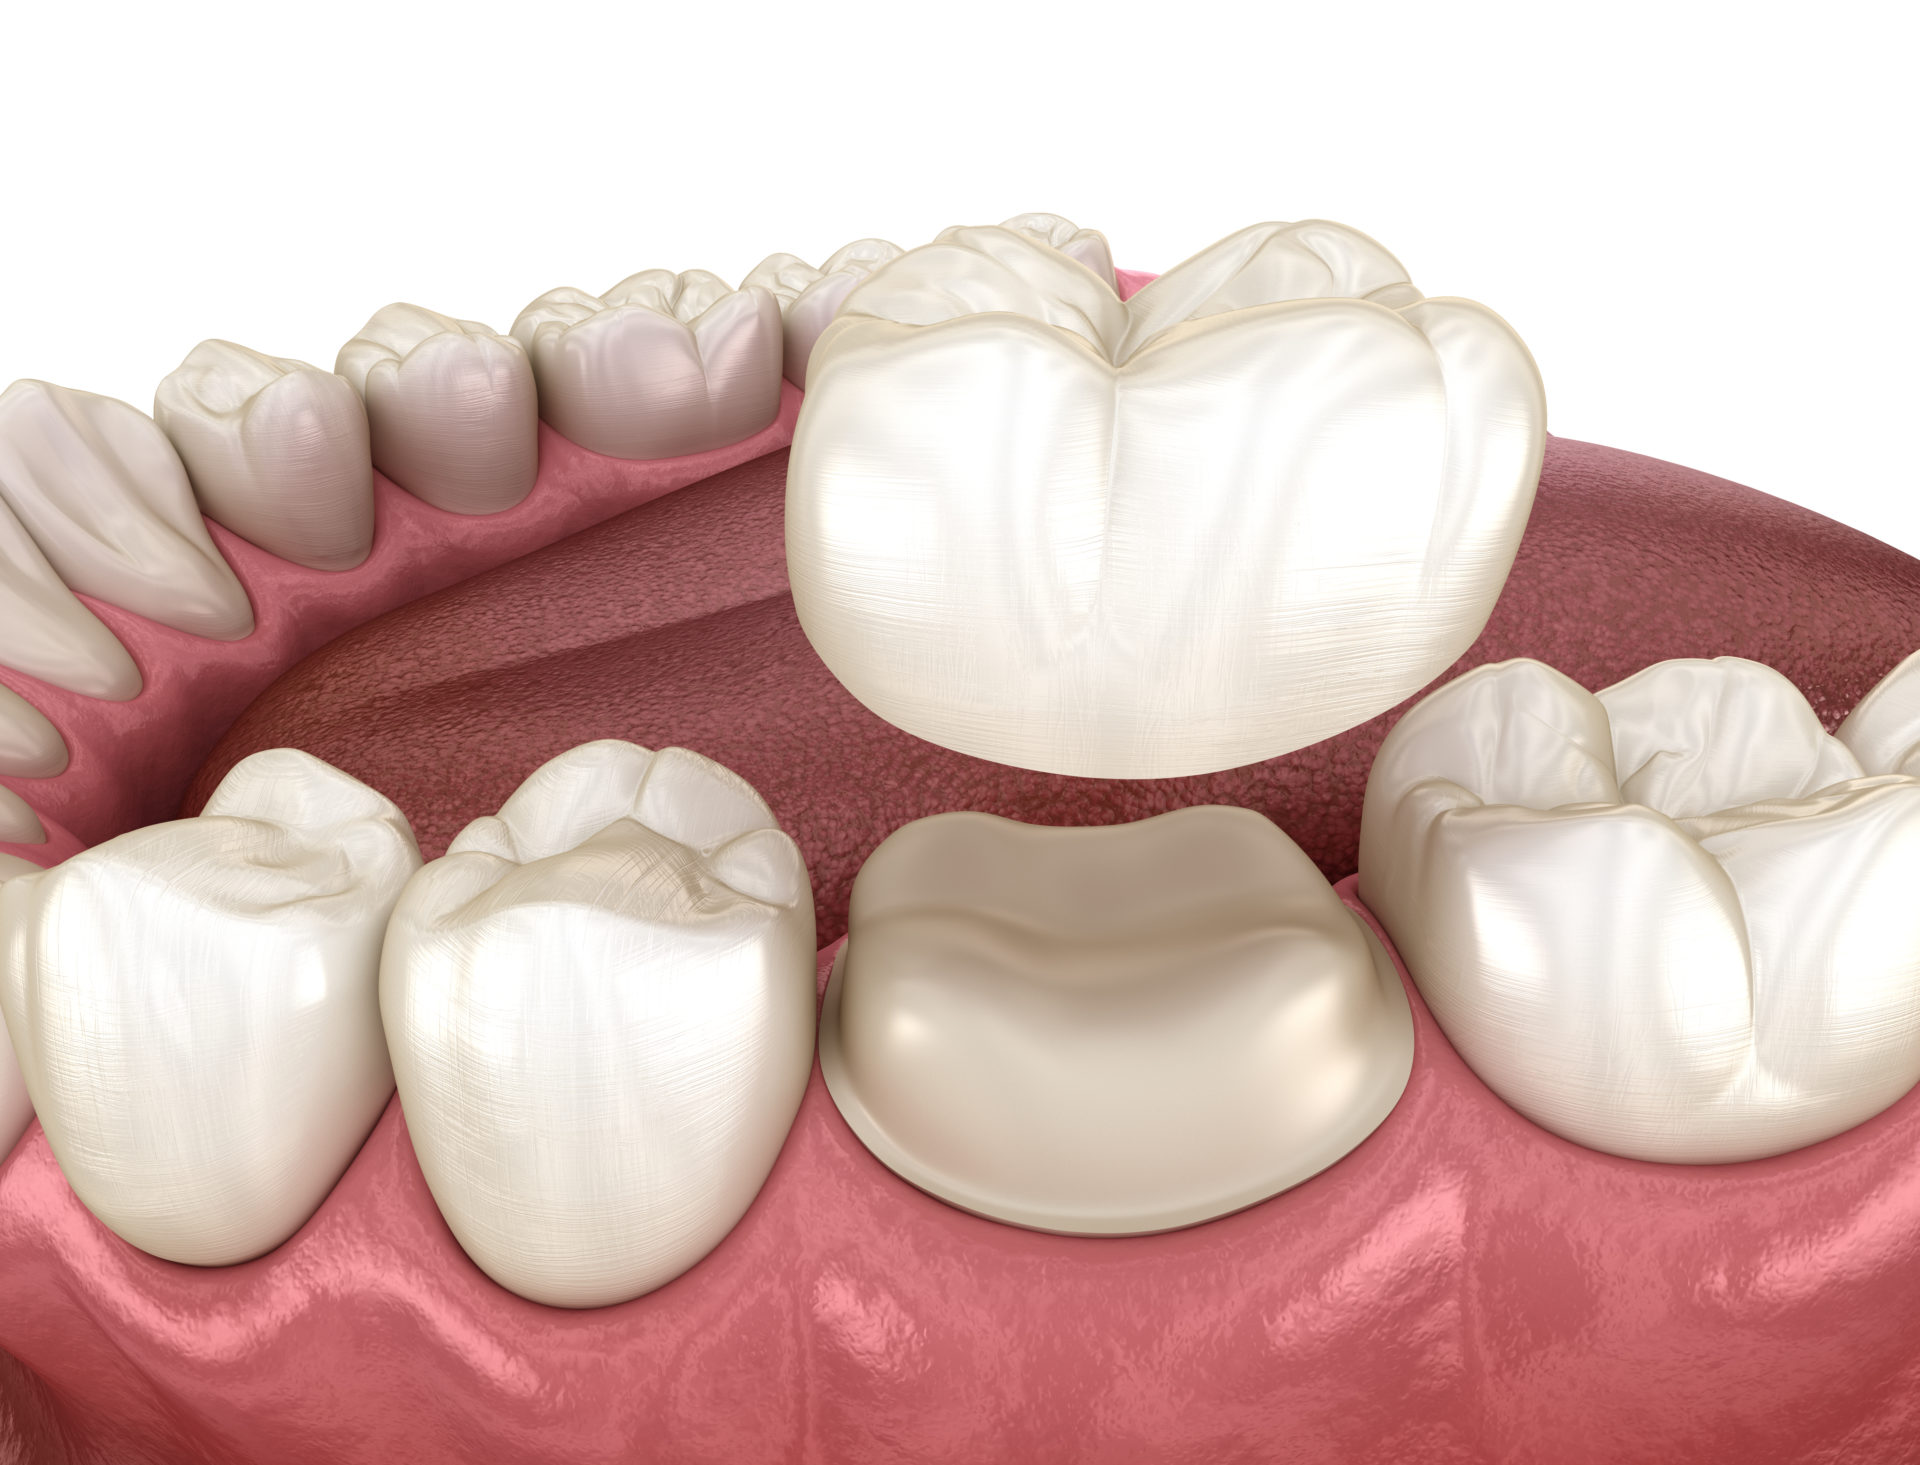 Couronnes dentaires: les explications simples des dentistes Vertuo